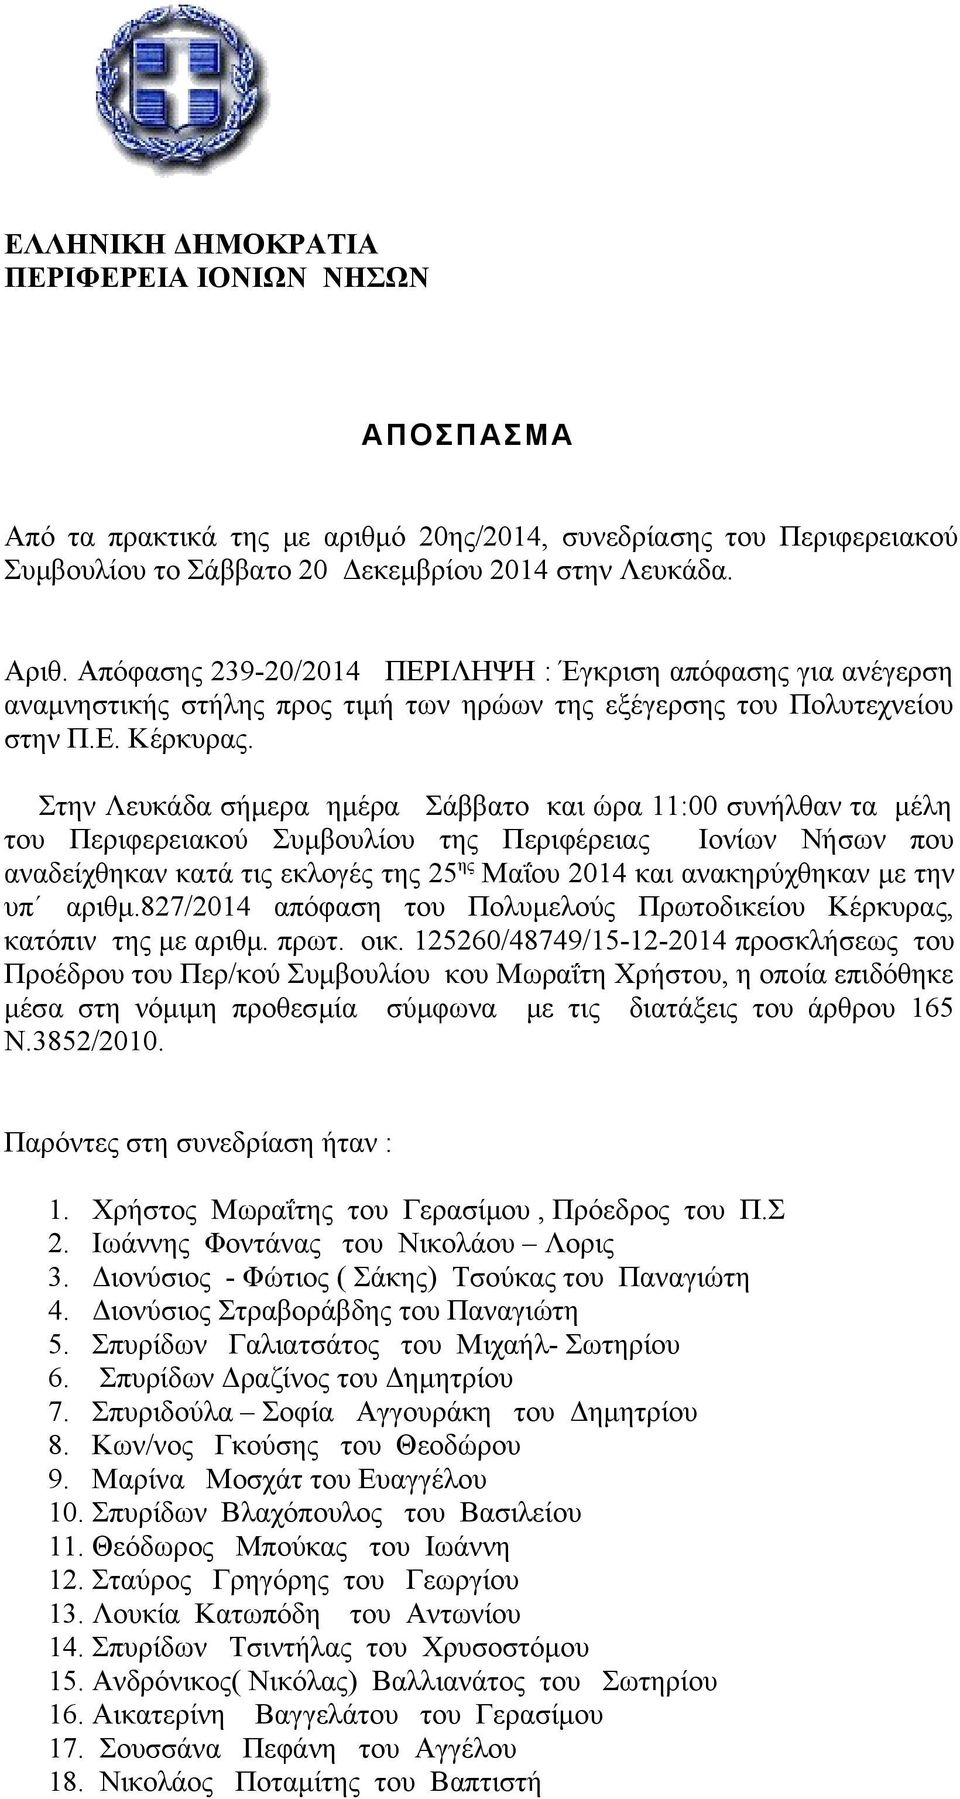 Στην Λευκάδα σήμερα ημέρα Σάββατο και ώρα 11:00 συνήλθαν τα μέλη του Περιφερειακού Συμβουλίου της Περιφέρειας Ιονίων Νήσων που αναδείχθηκαν κατά τις εκλογές της 25 ης Μαΐου 2014 και ανακηρύχθηκαν με